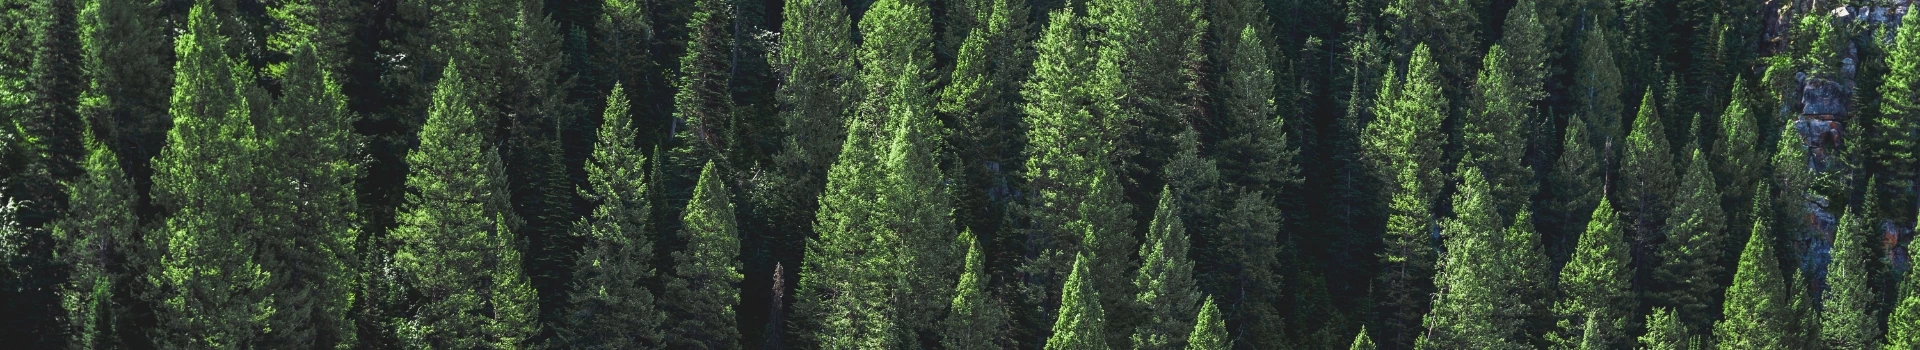 widok drzew w lesie